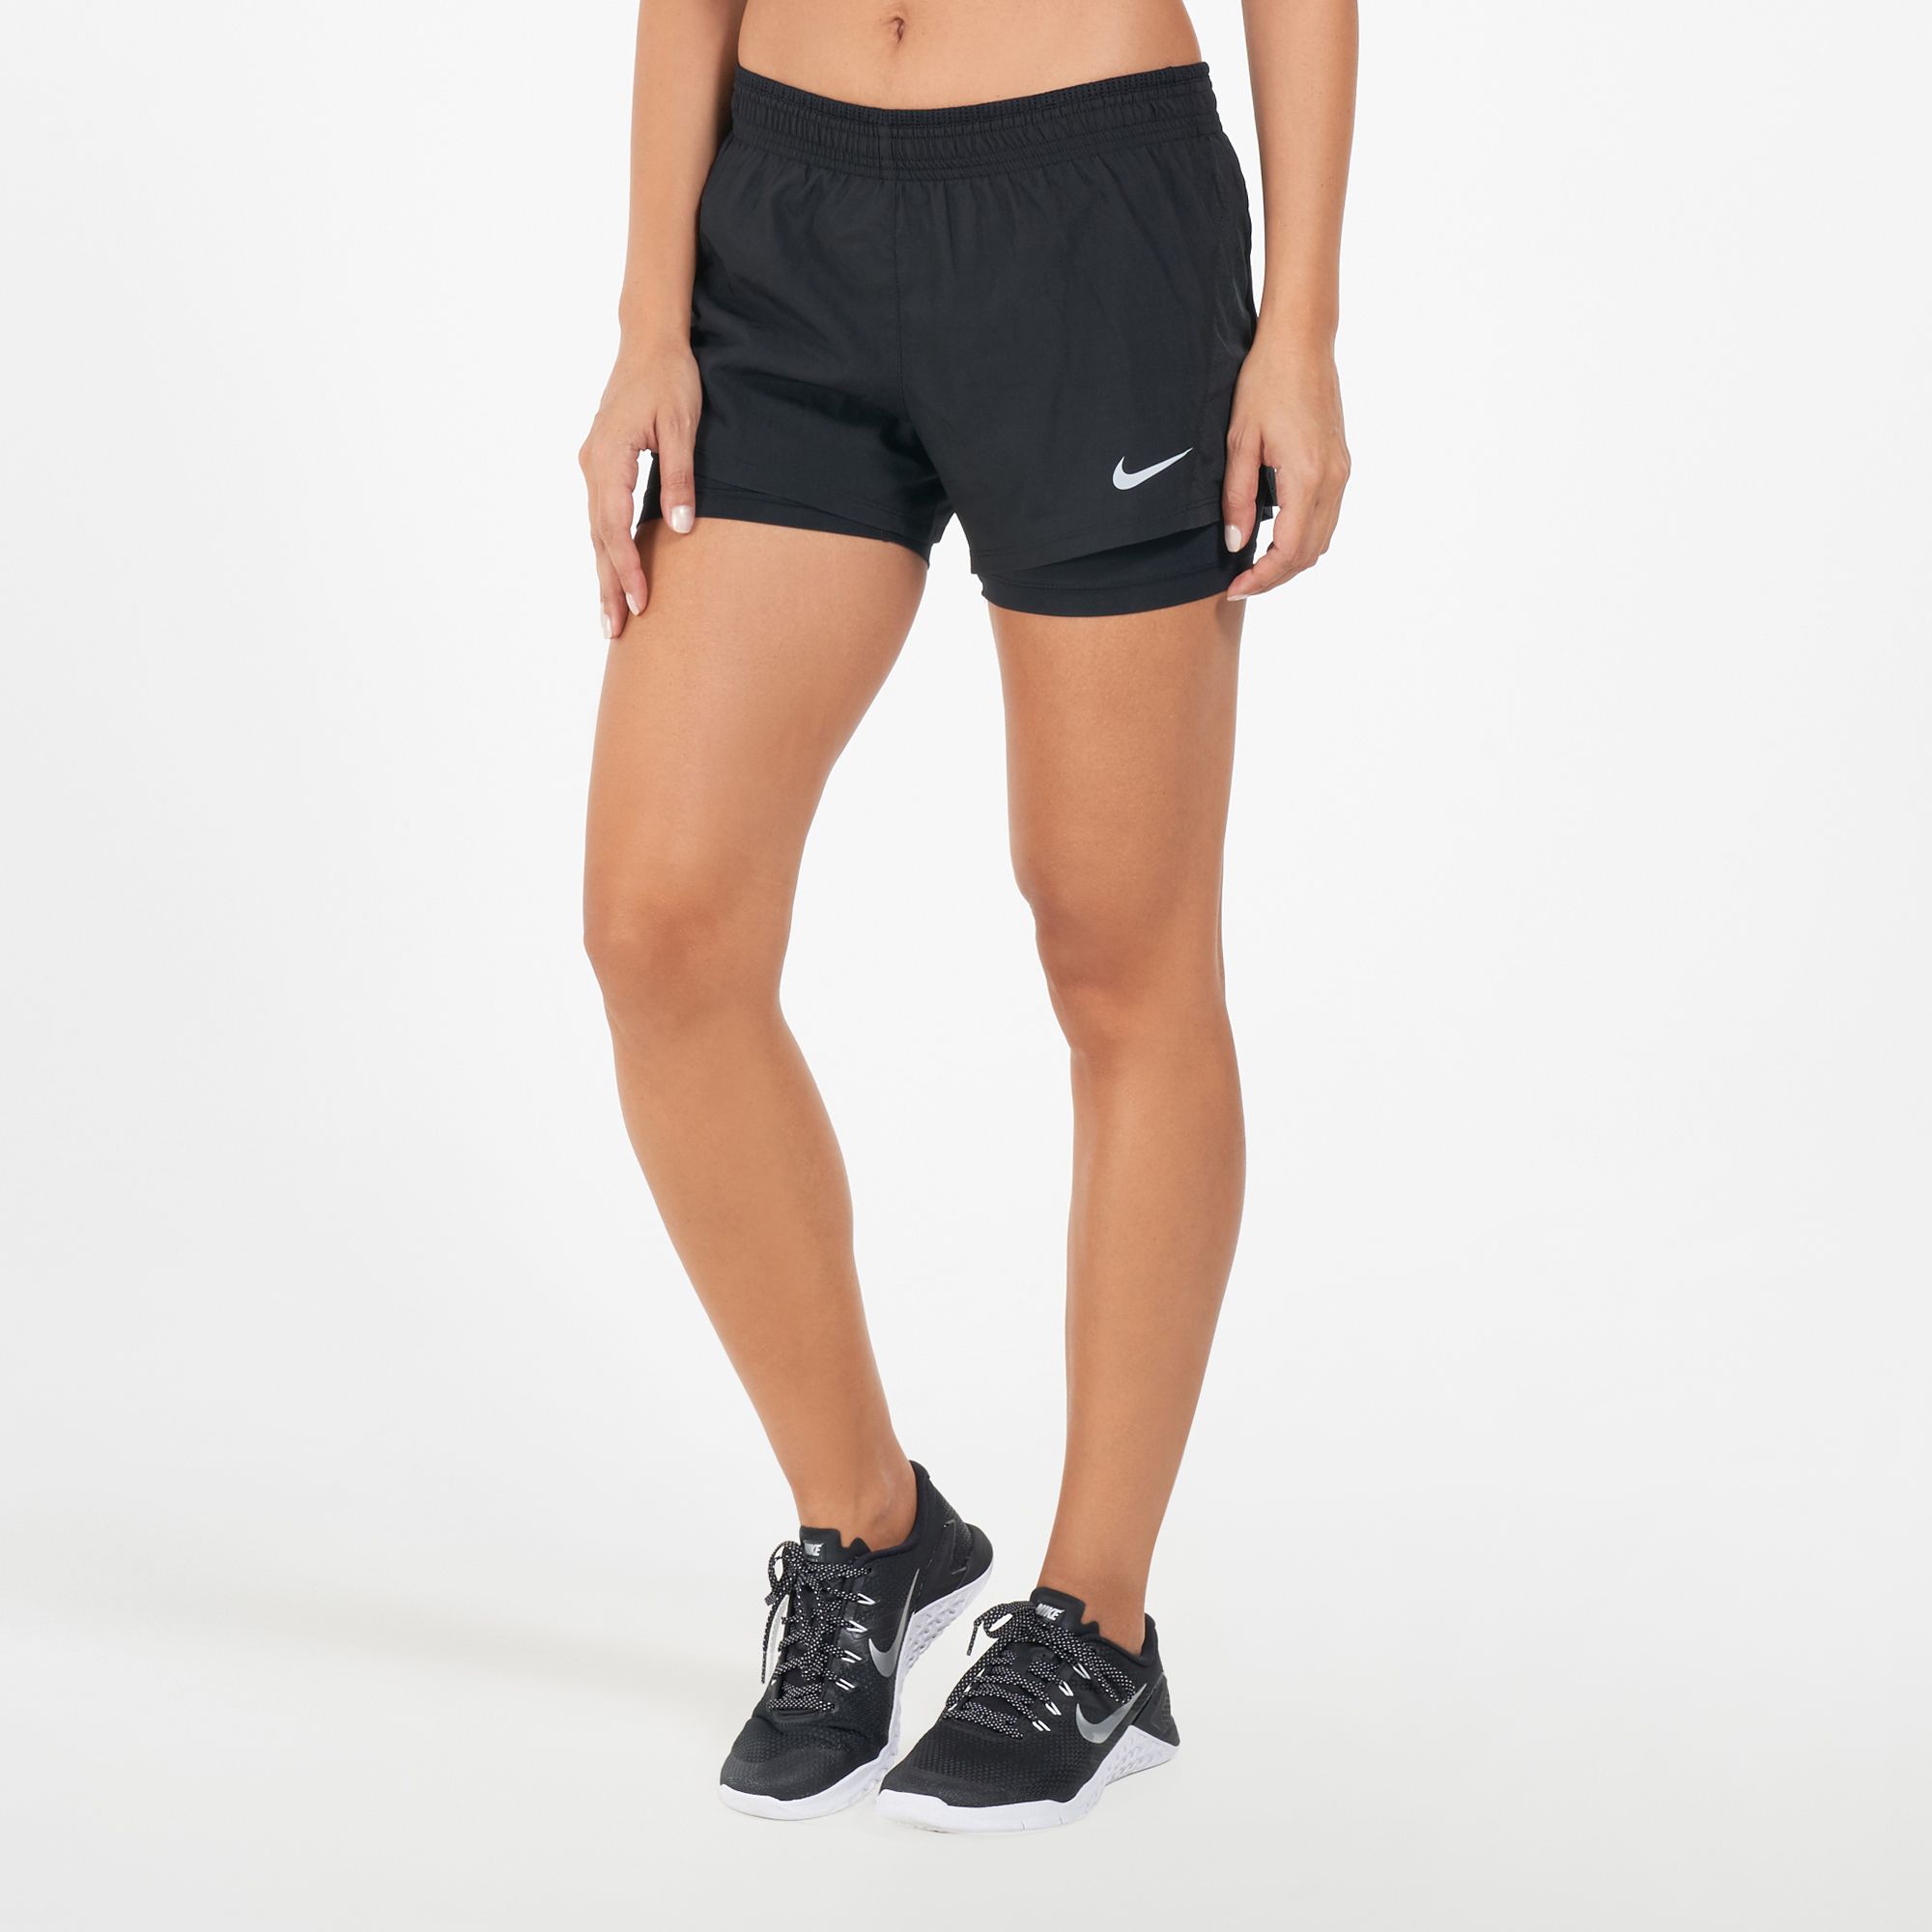 Nike Women's 10K 2-in-1 Shorts | Shorts | Clothing | Women's Sale | Sale |  SSS